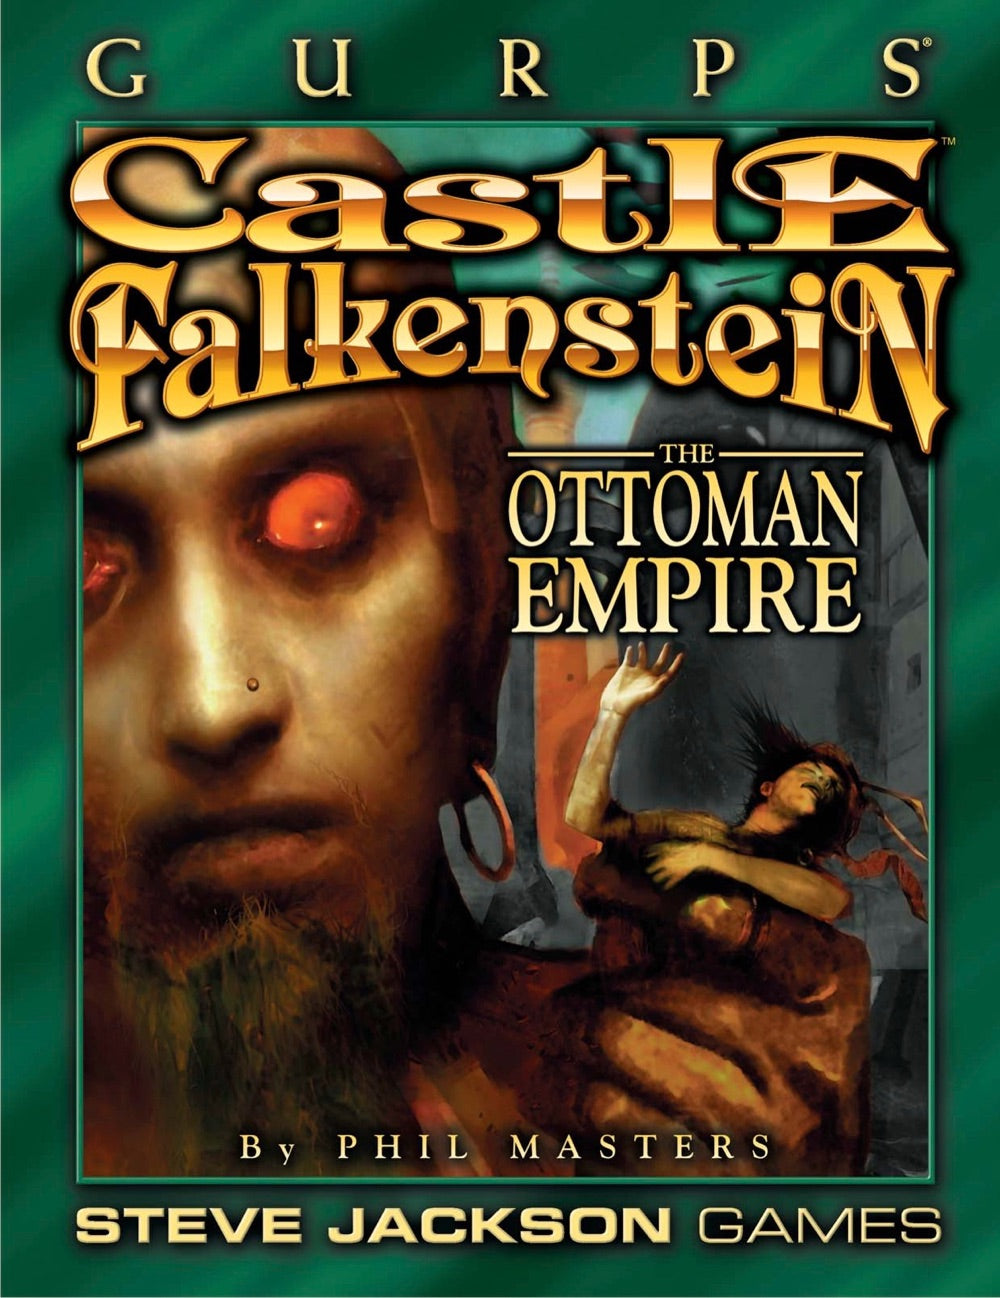 GURPS Classic: Castle Falkenstein - The Ottoman Empire